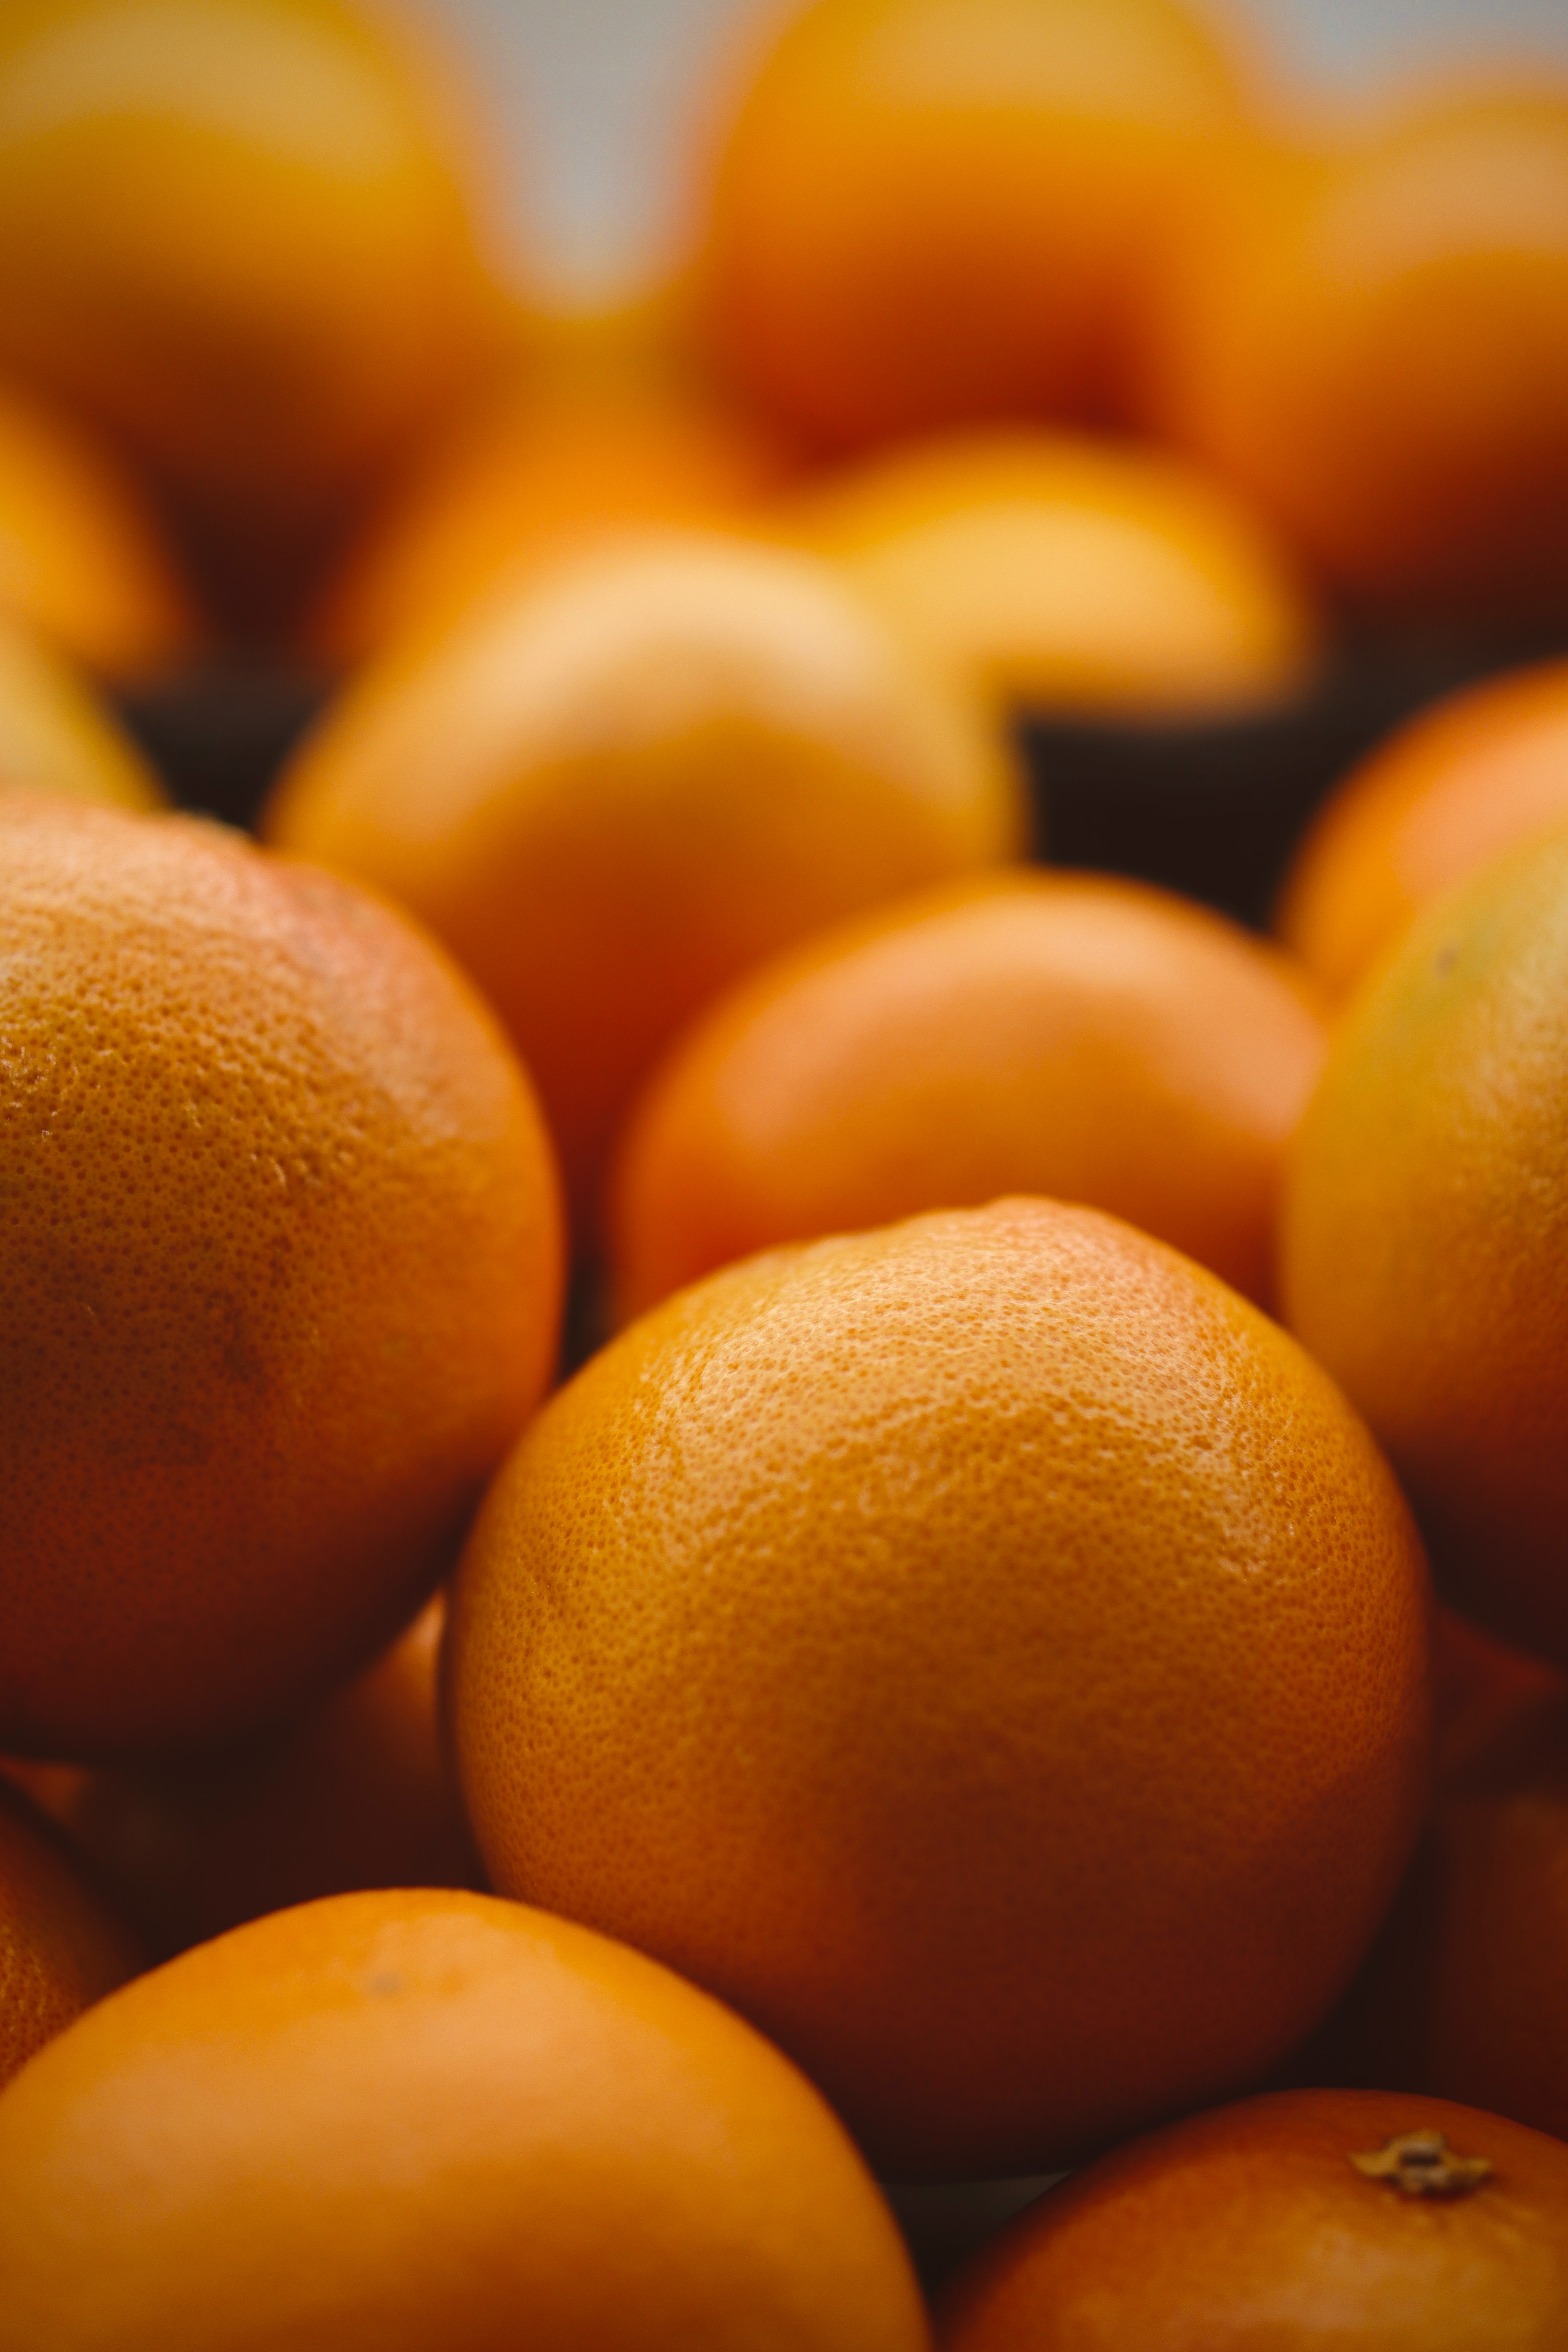 fruits, food, oranges, orange, citrus